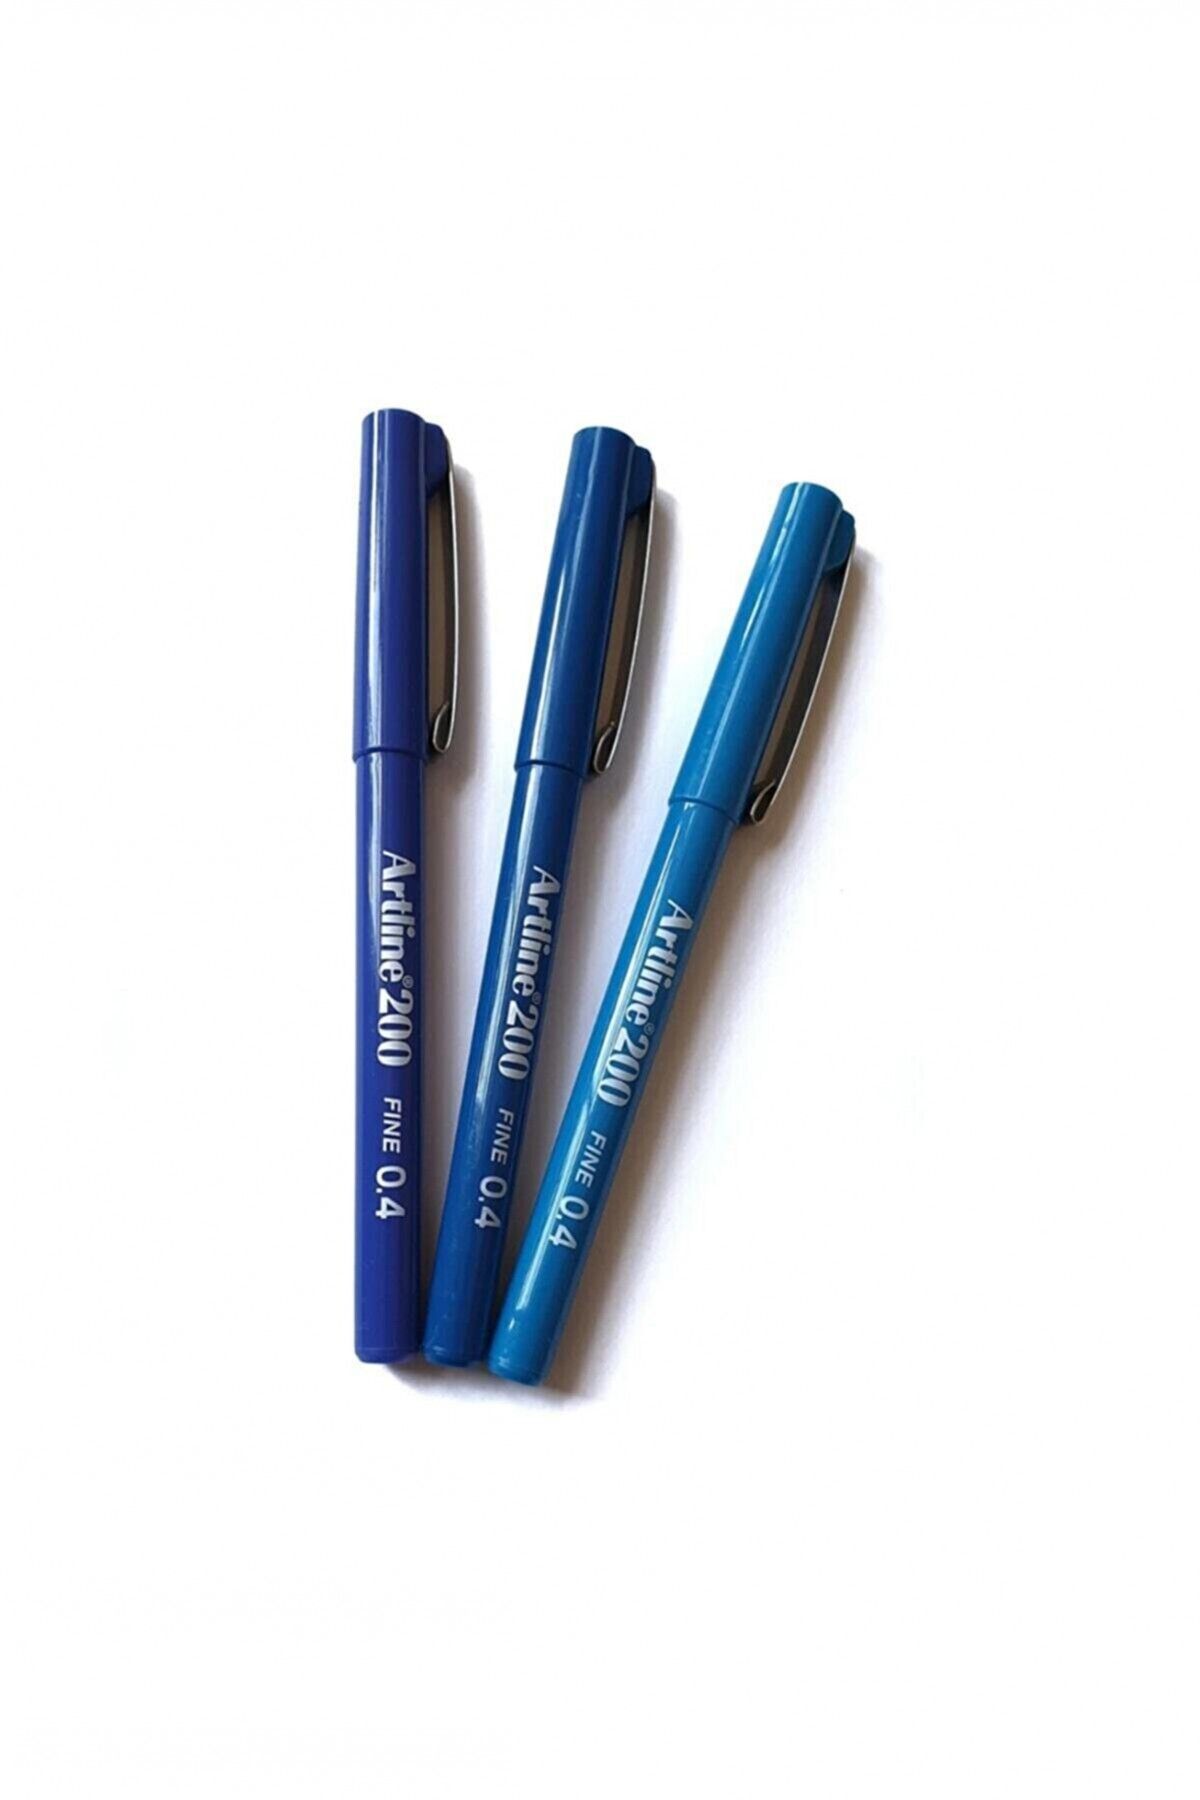 artline 200 Fine 0.4 Mm Yazı & Çizim Kalemi Mavi Tonları (3 Kalem)